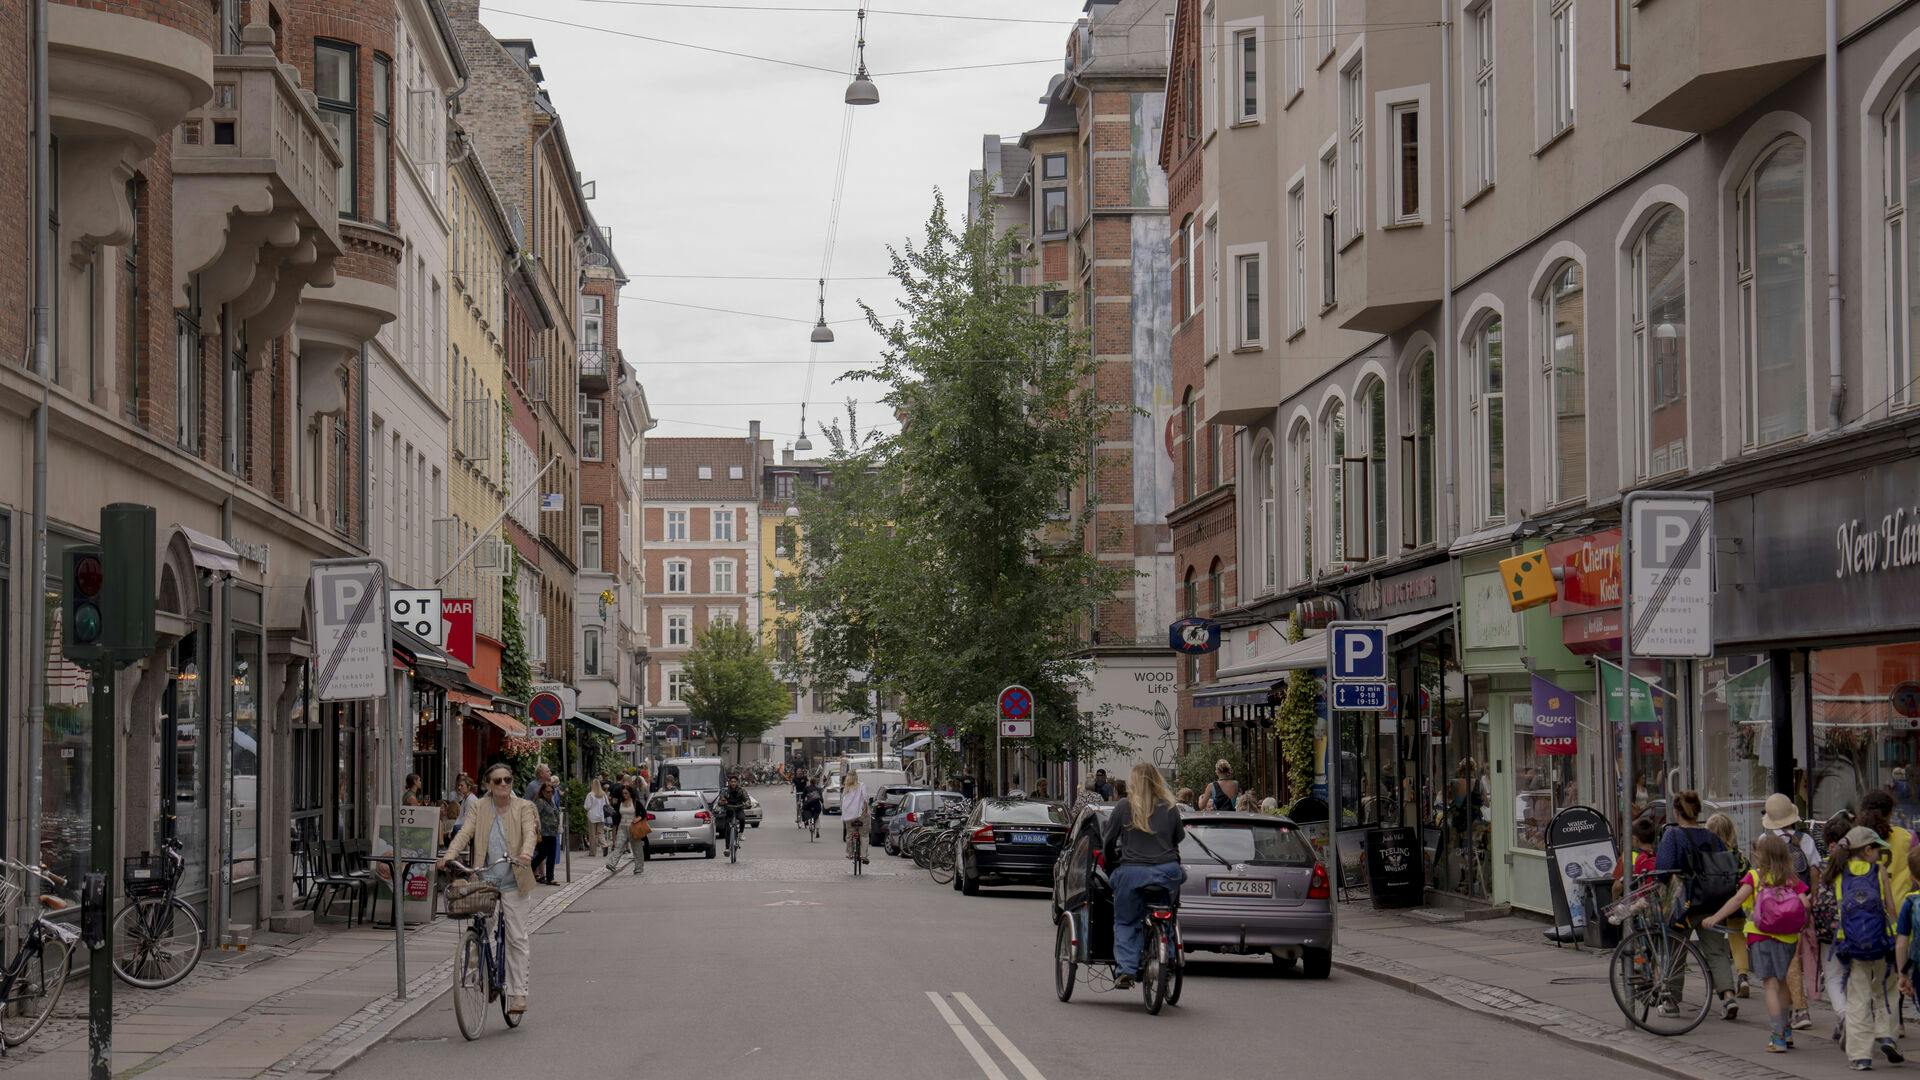 Værnedamsvej. Gaden er opkaldt efter en værtshusejer, Werner Dam, - og deler sig mellem København og Frederiksberg Her set fra Gl.Kongevej